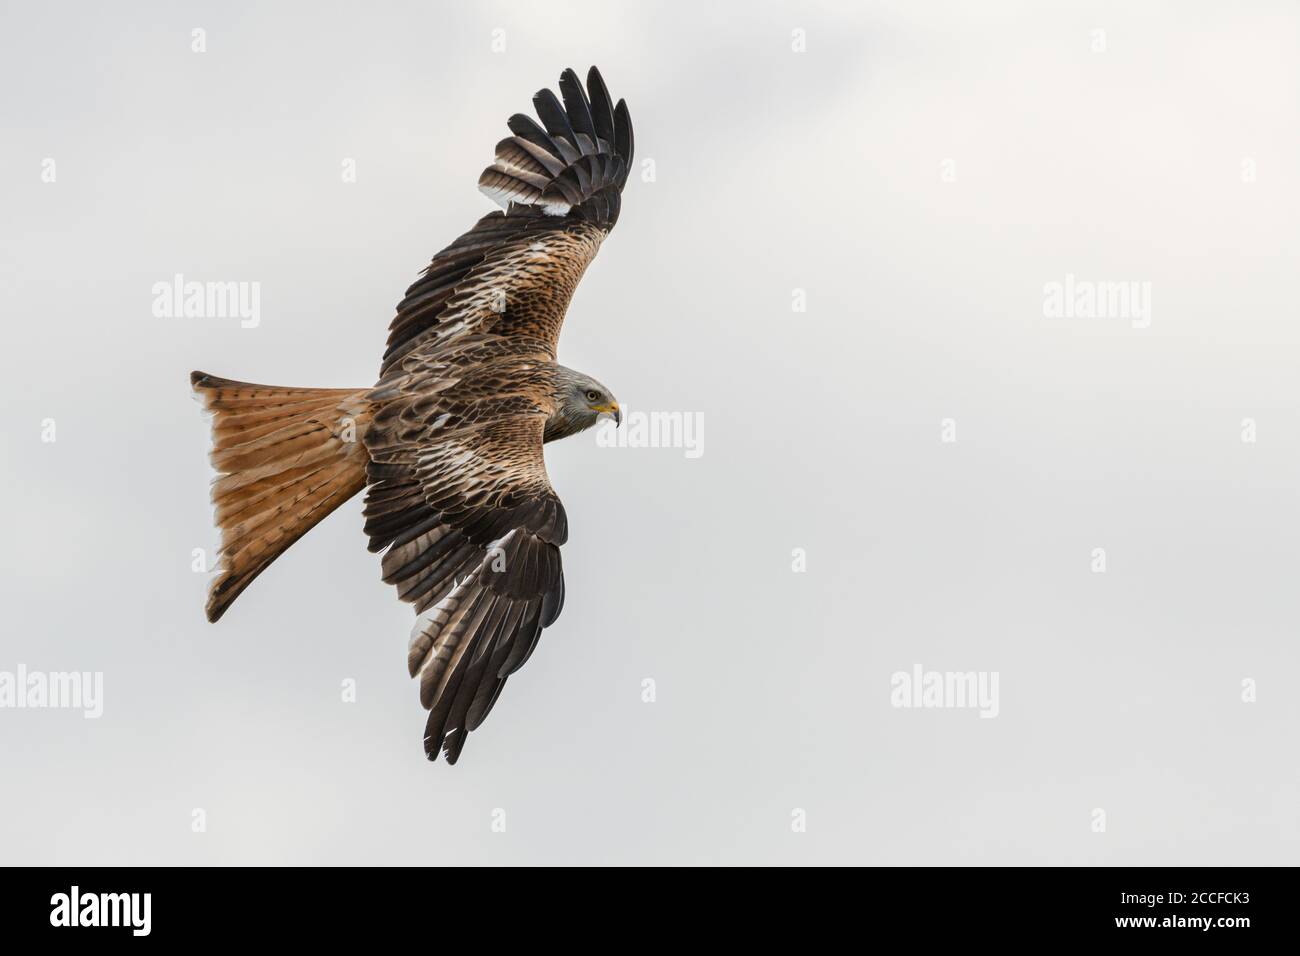 Red kite in flight. Native bird species in Germany. Stock Photo